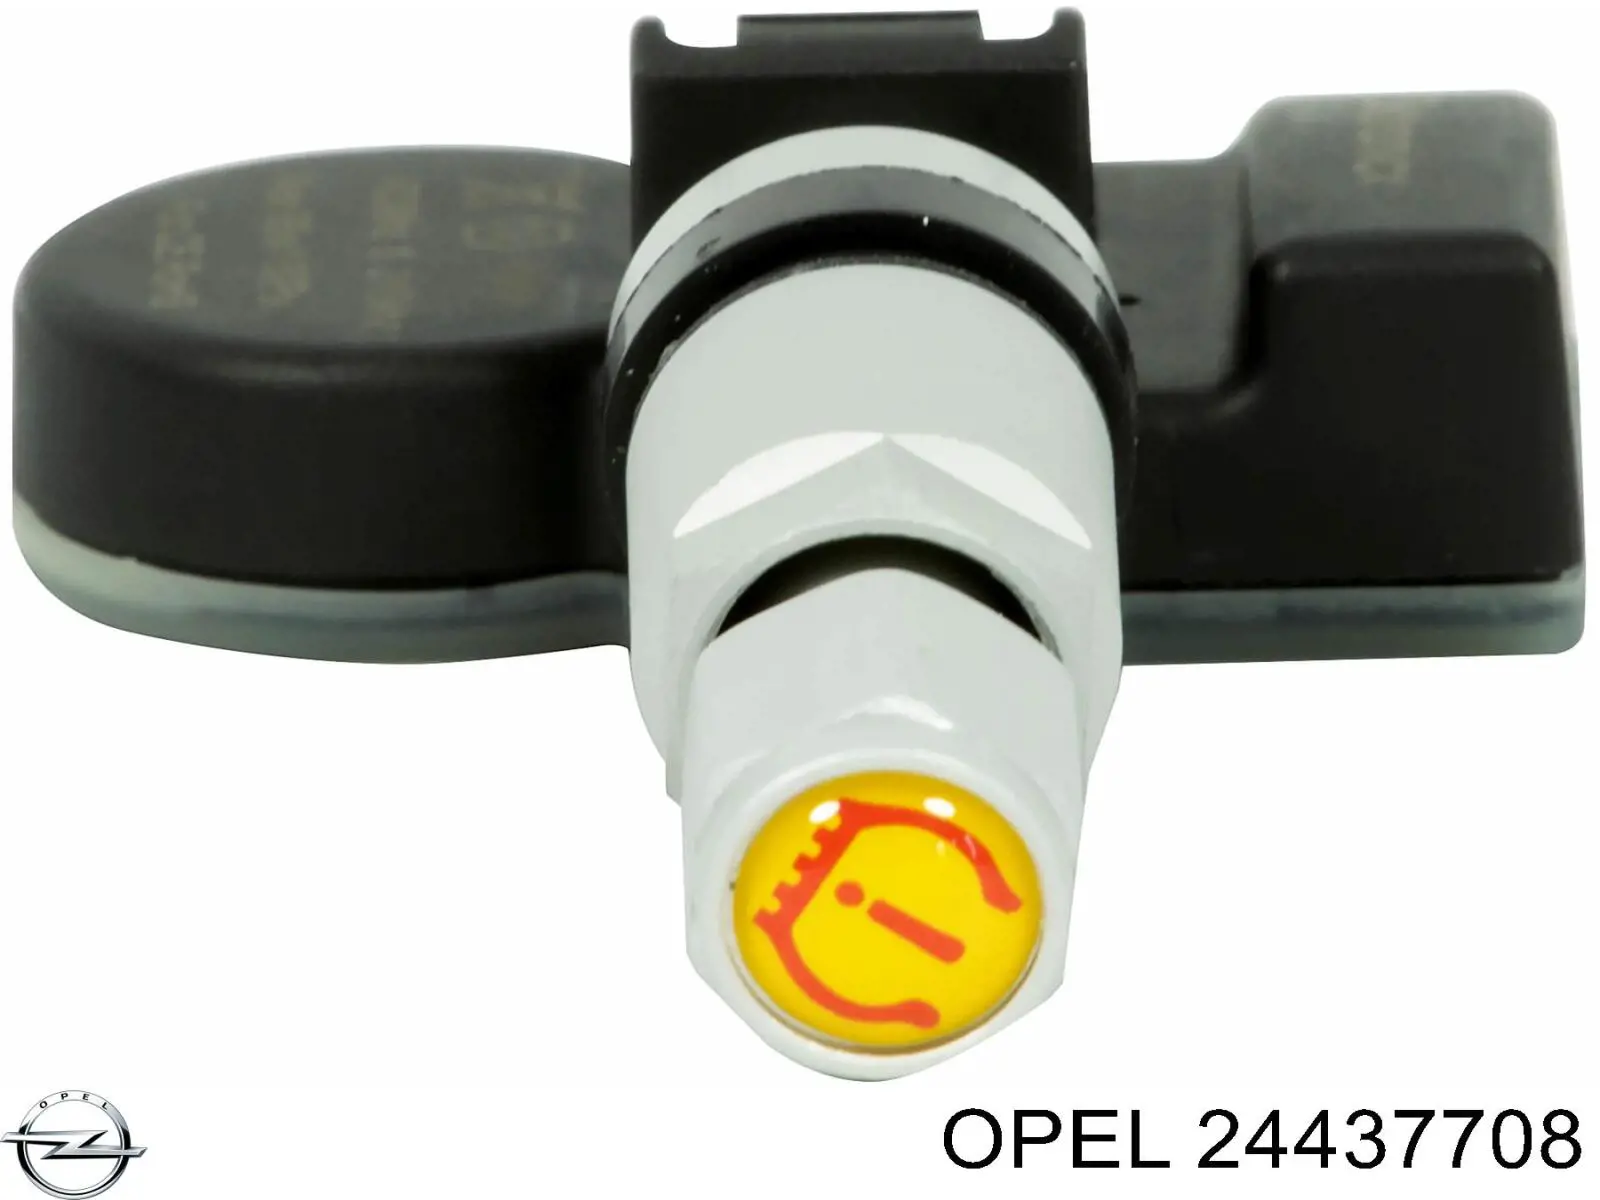 24437708 Opel датчик давления воздуха в шинах